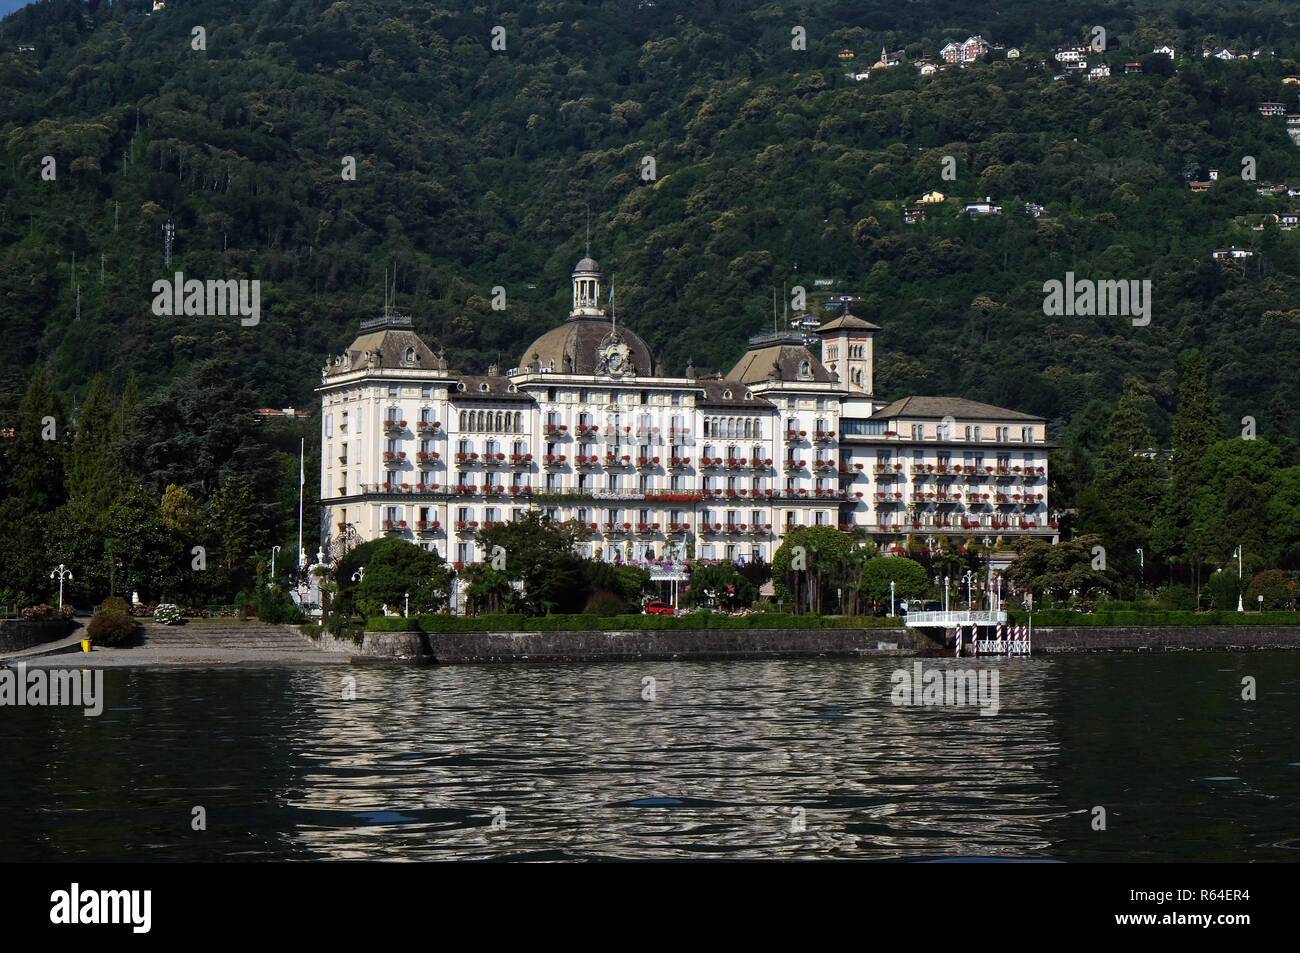 Grand Hotel des Iles Borromees, Stresa, Lago Maggiore, Piedmont, Italy Stock Photo